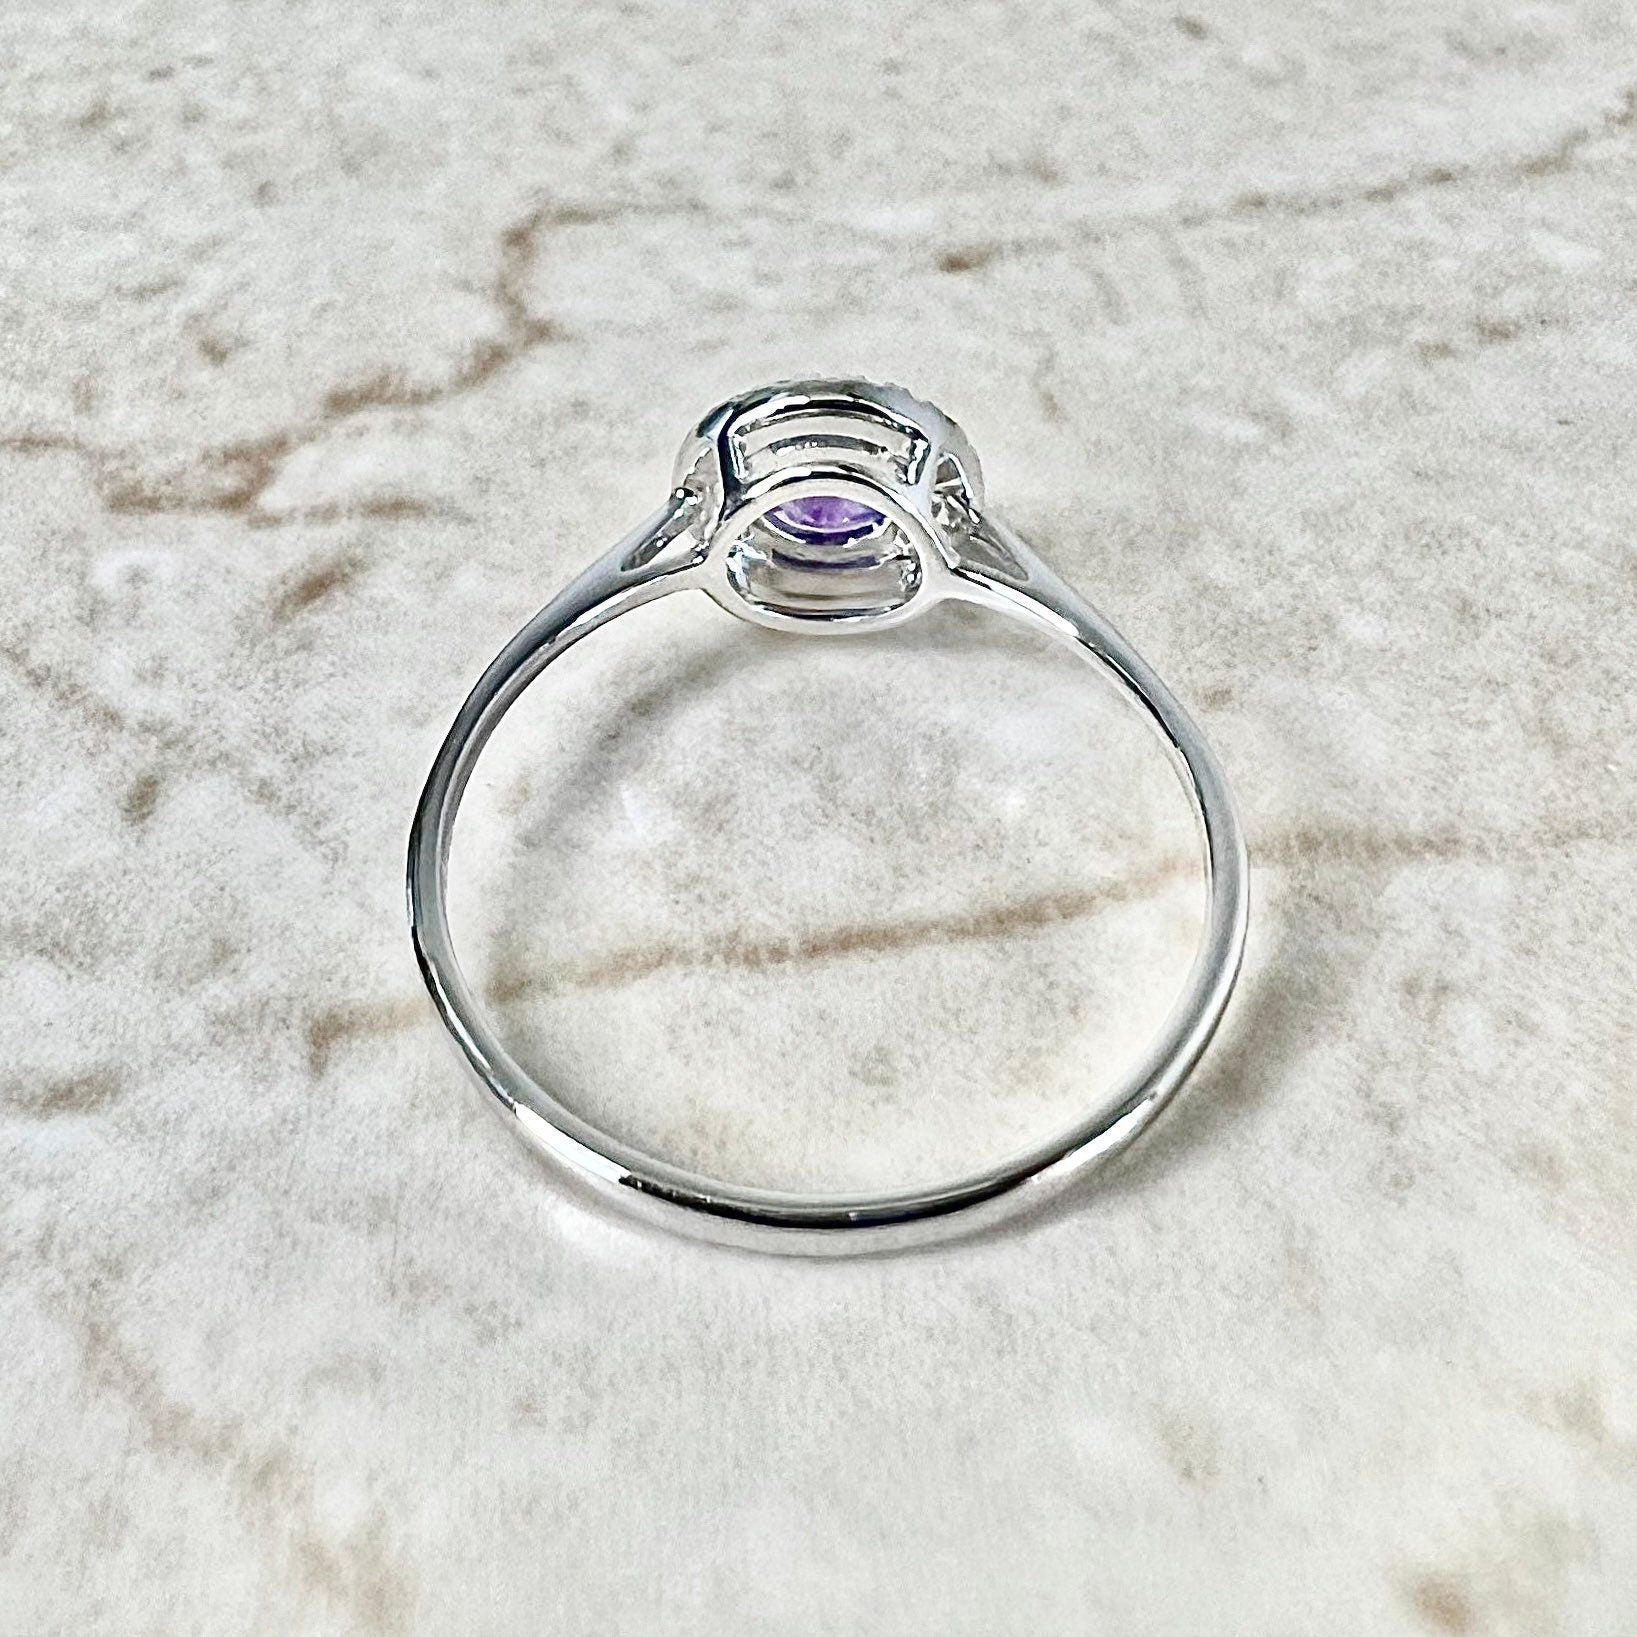 14K Round Amethyst Halo Ring - White Gold Amethyst Ring - Gemstone Halo Ring - Amethyst Promise Ring - February Birthstone - Birthday Gift